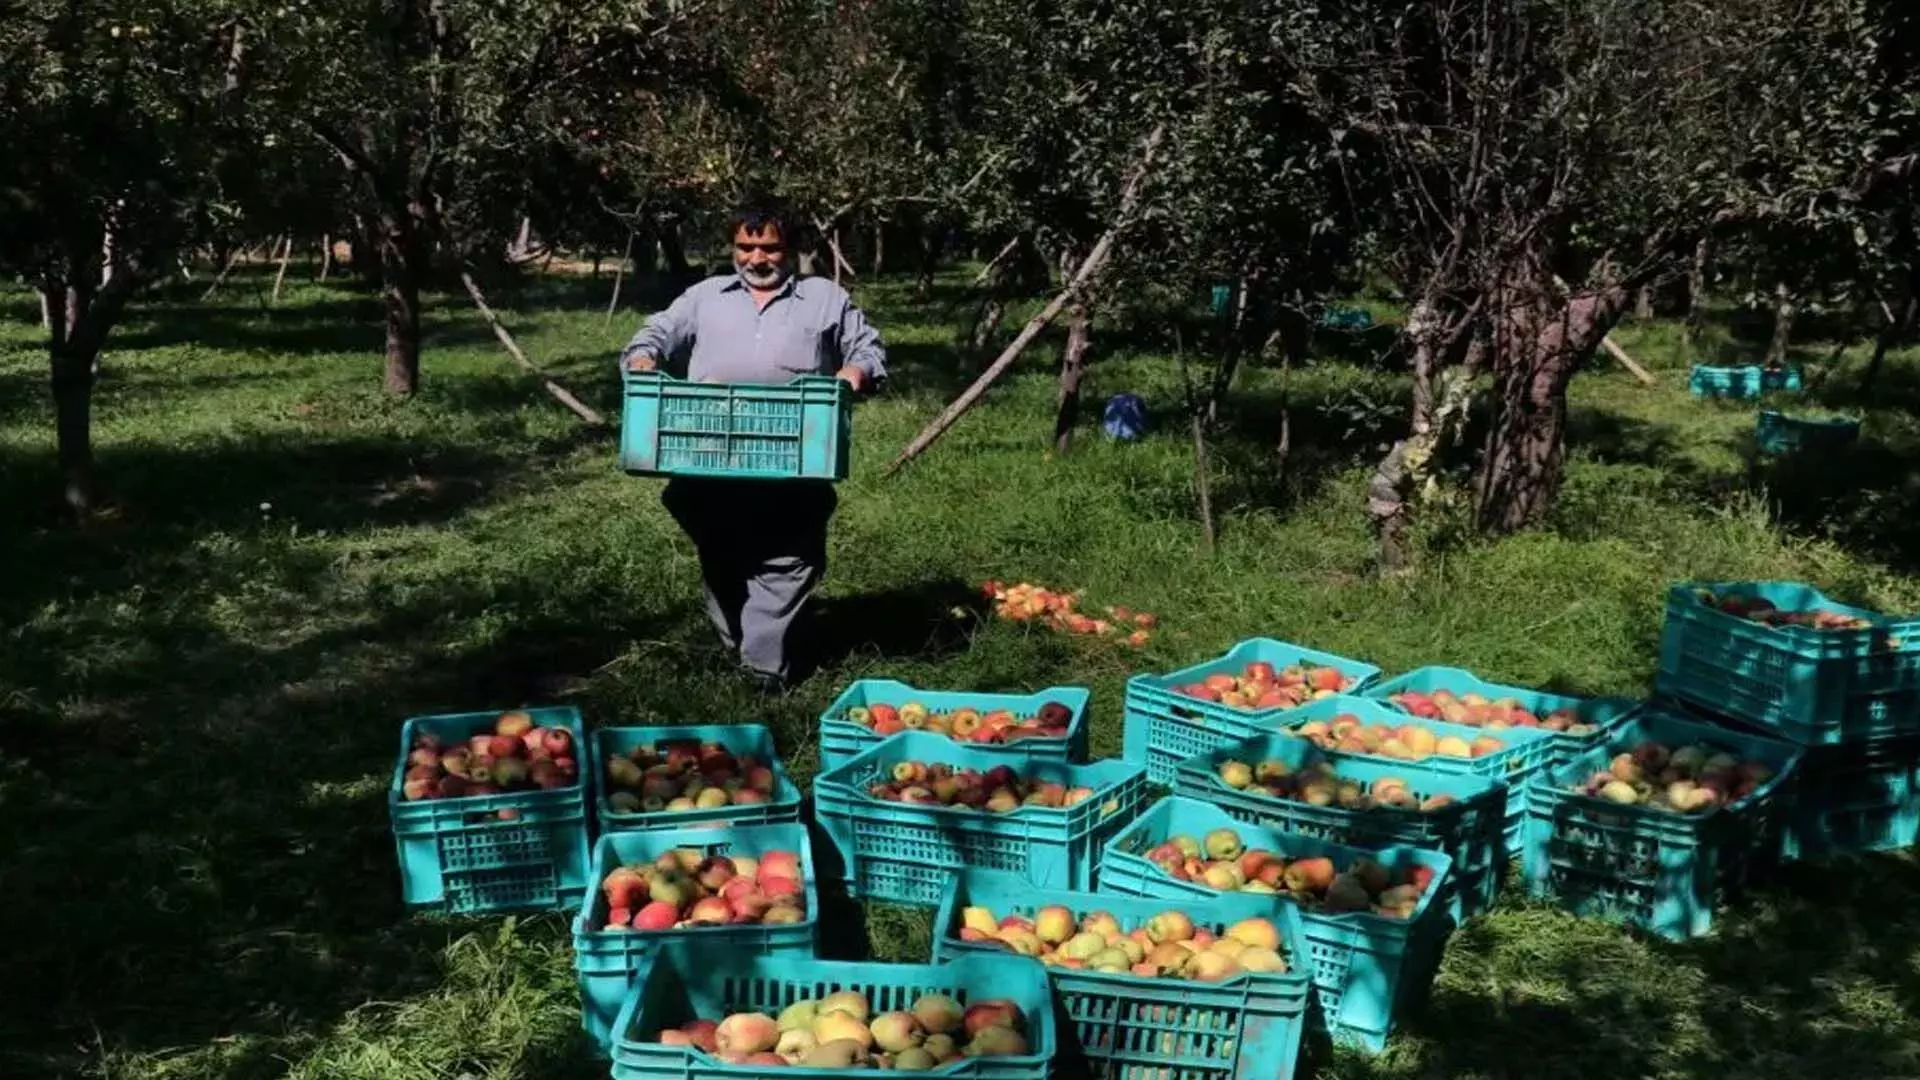 कश्मीरी सेब उद्योग विदेशी फलों के आक्रमण से जूझ रहा